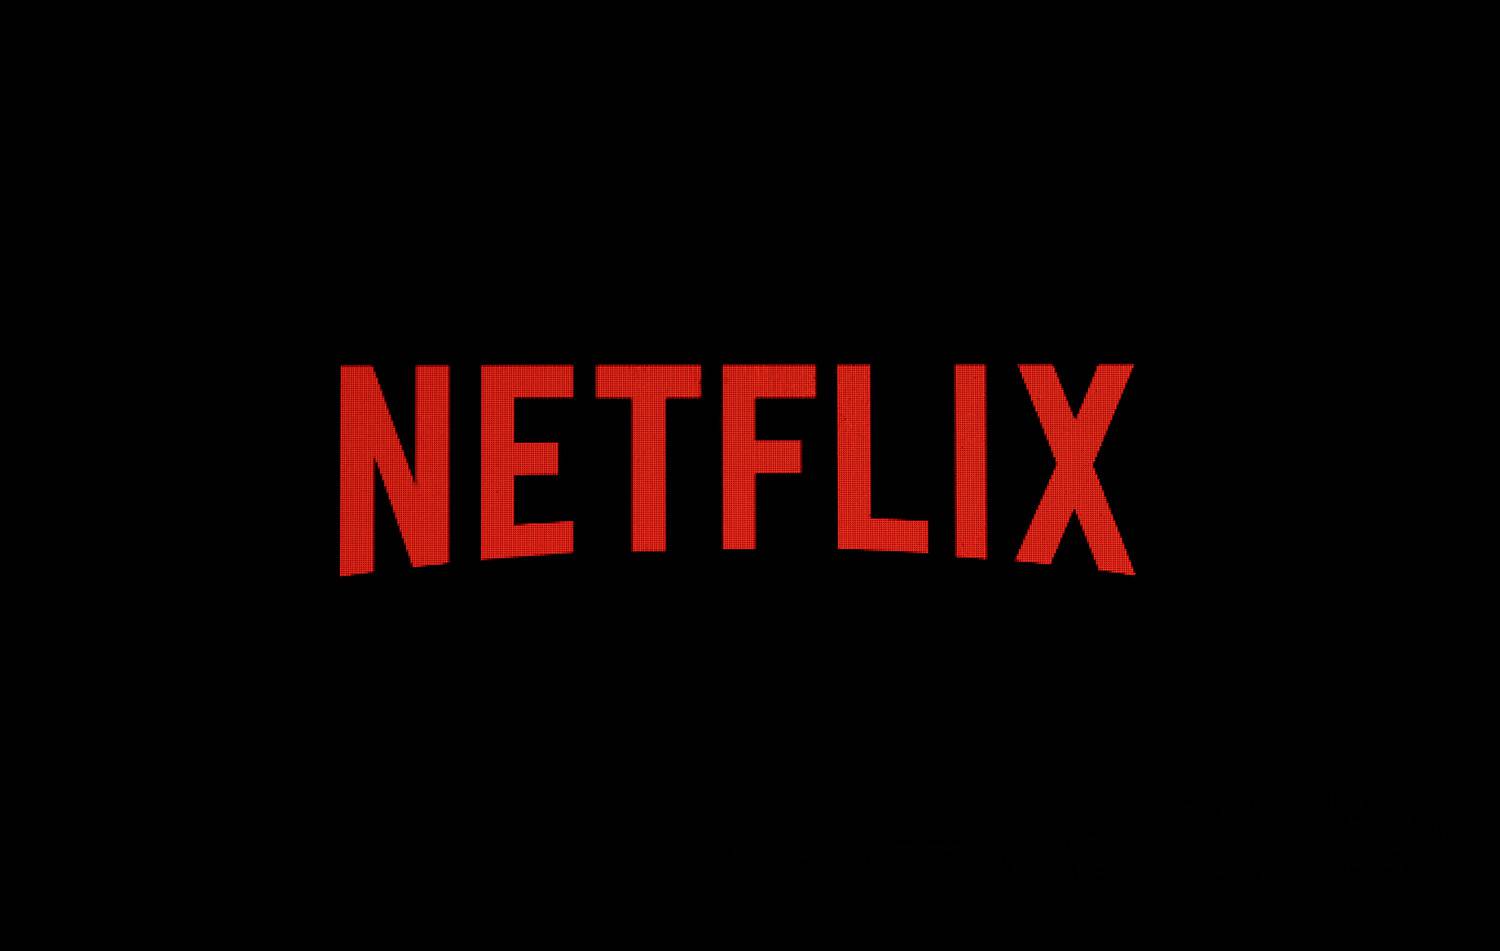 Netflix-Änderung, mit der niemand gerechnet hat